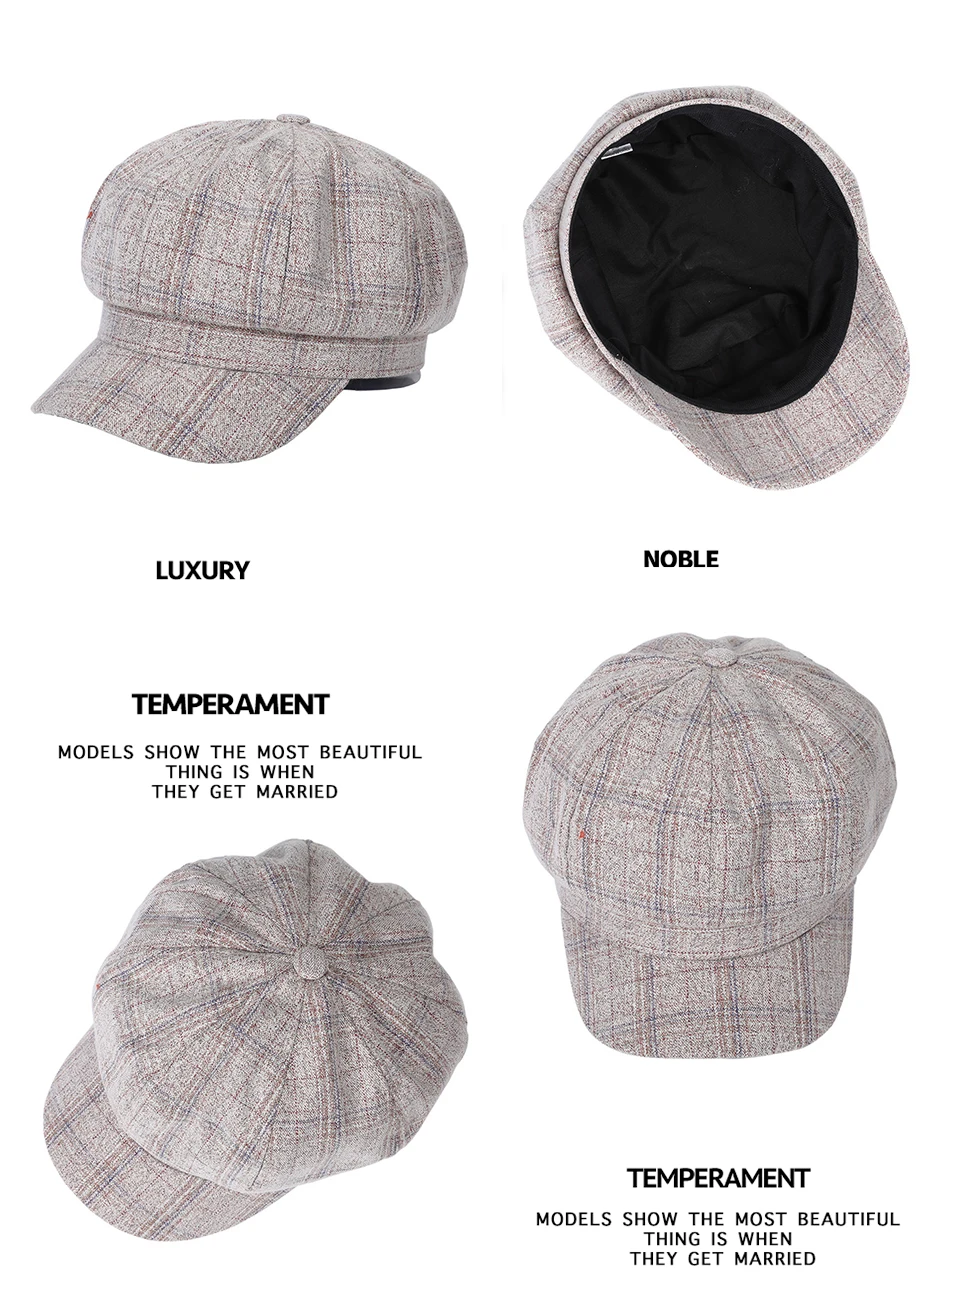 AWAYTR, классические клетчатые шапки Newsboy, восьмиугольная тёплая шапка, аксессуары в повседневном стиле, разноцветные шапки унисекс с подкладкой высокого качества